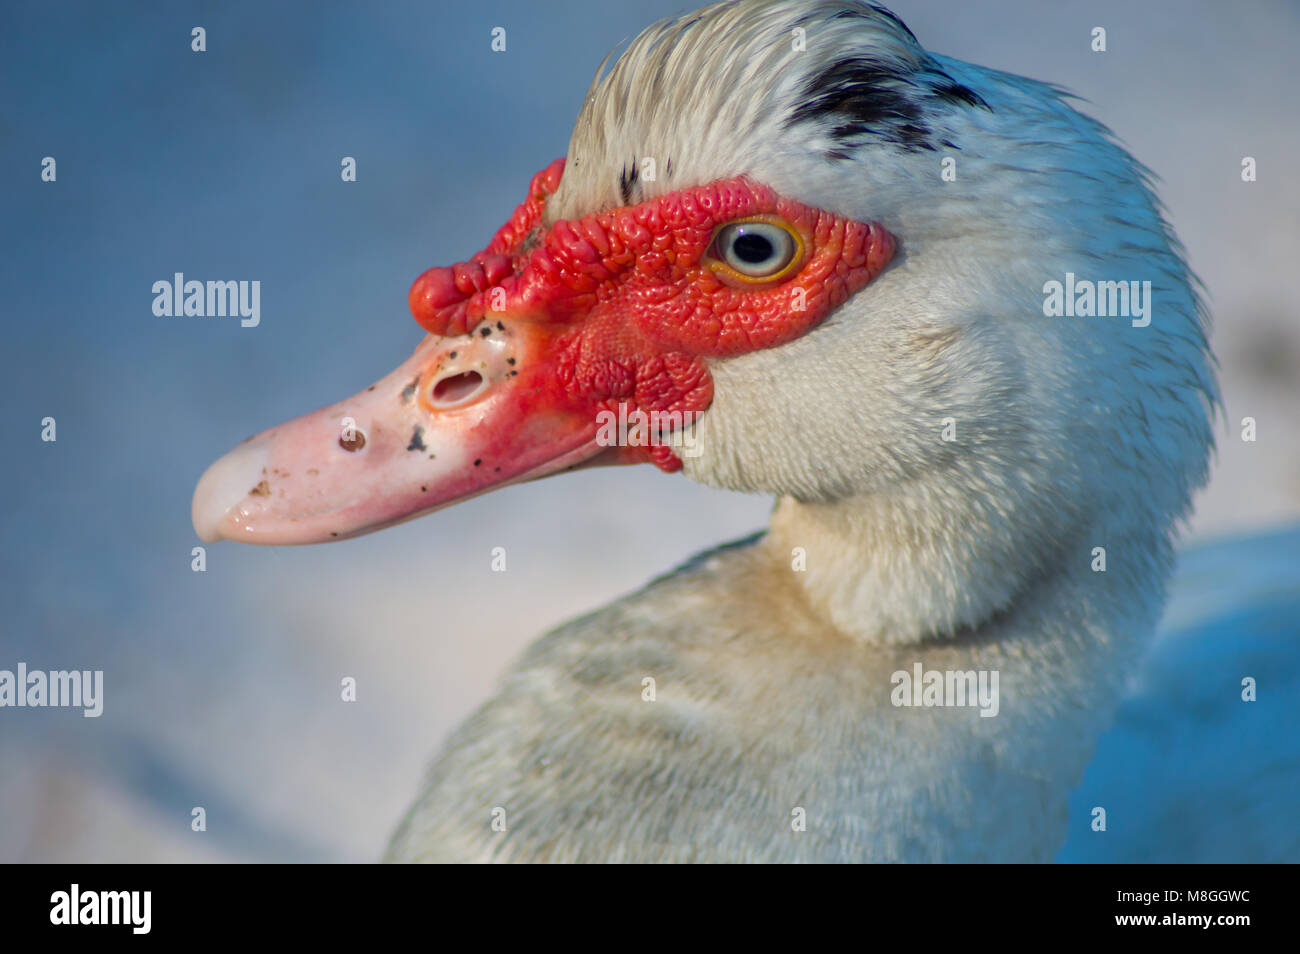 Canard de barbarie close up. Cette belle duck a les yeux bleus et le noir sur les spécifications de ses plumes et le projet de loi le rend unique. Banque D'Images